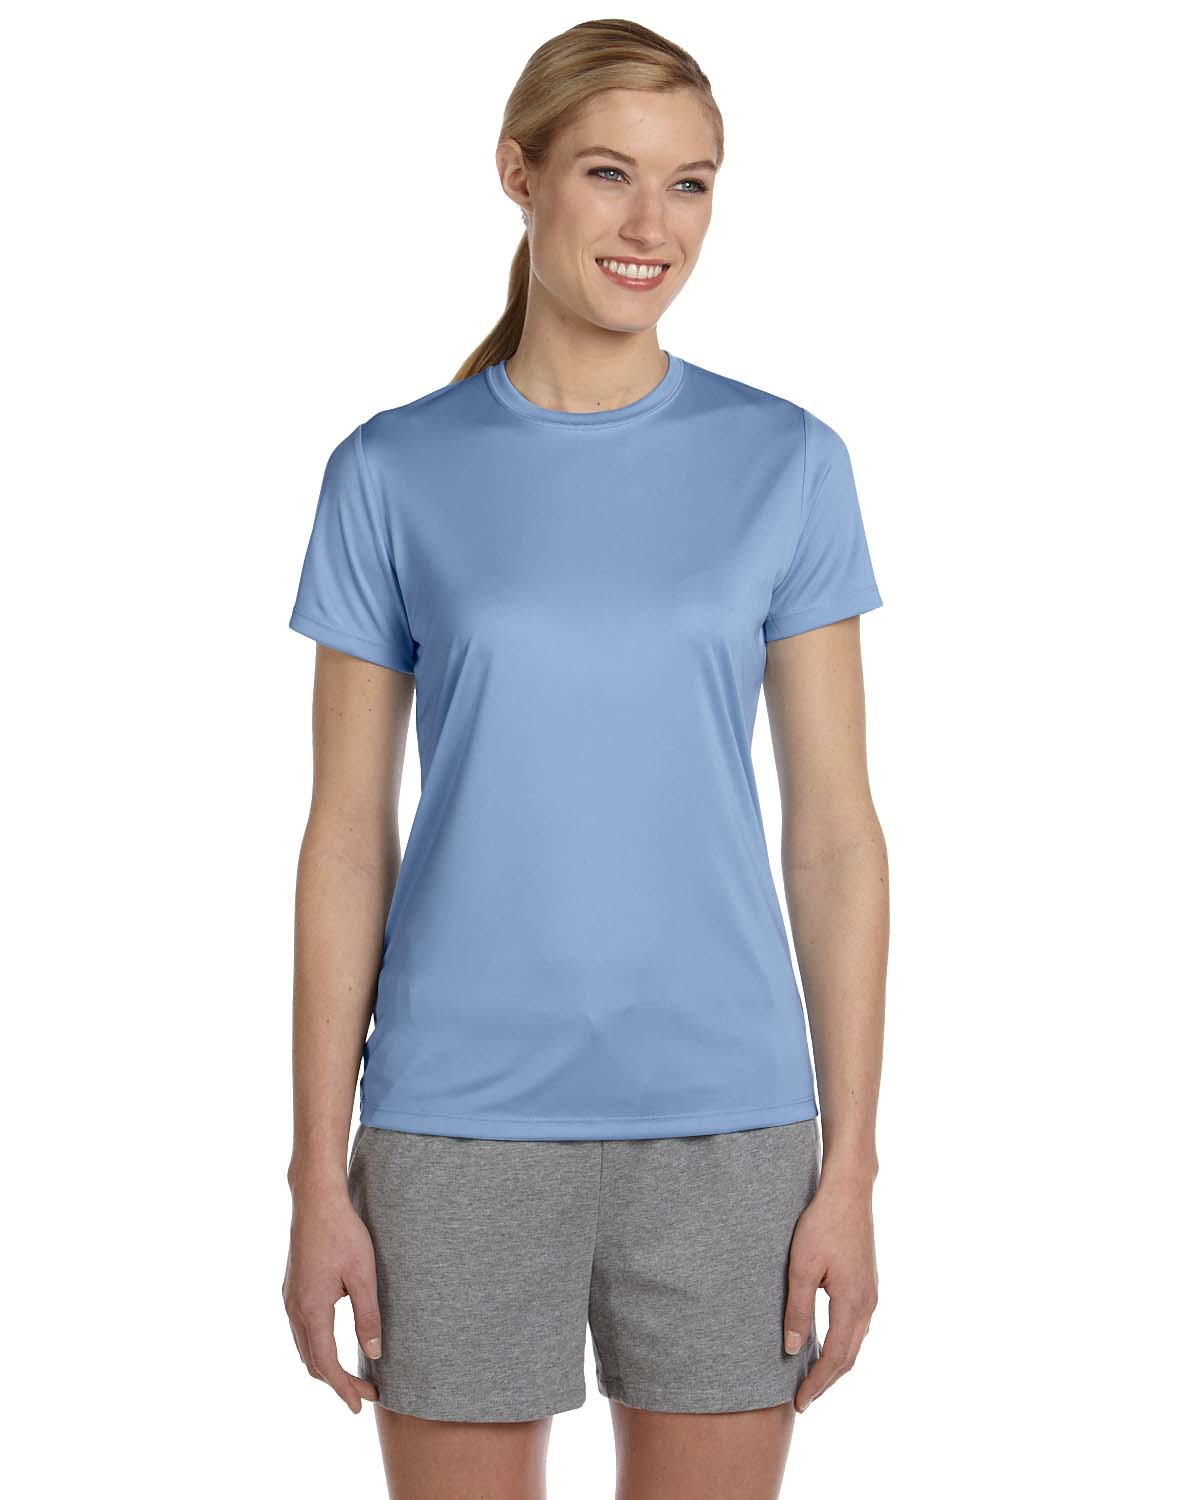 Hanes 4830 - Ladies' Cool DRI Performance T-Shirt $8.68 - T-Shirts